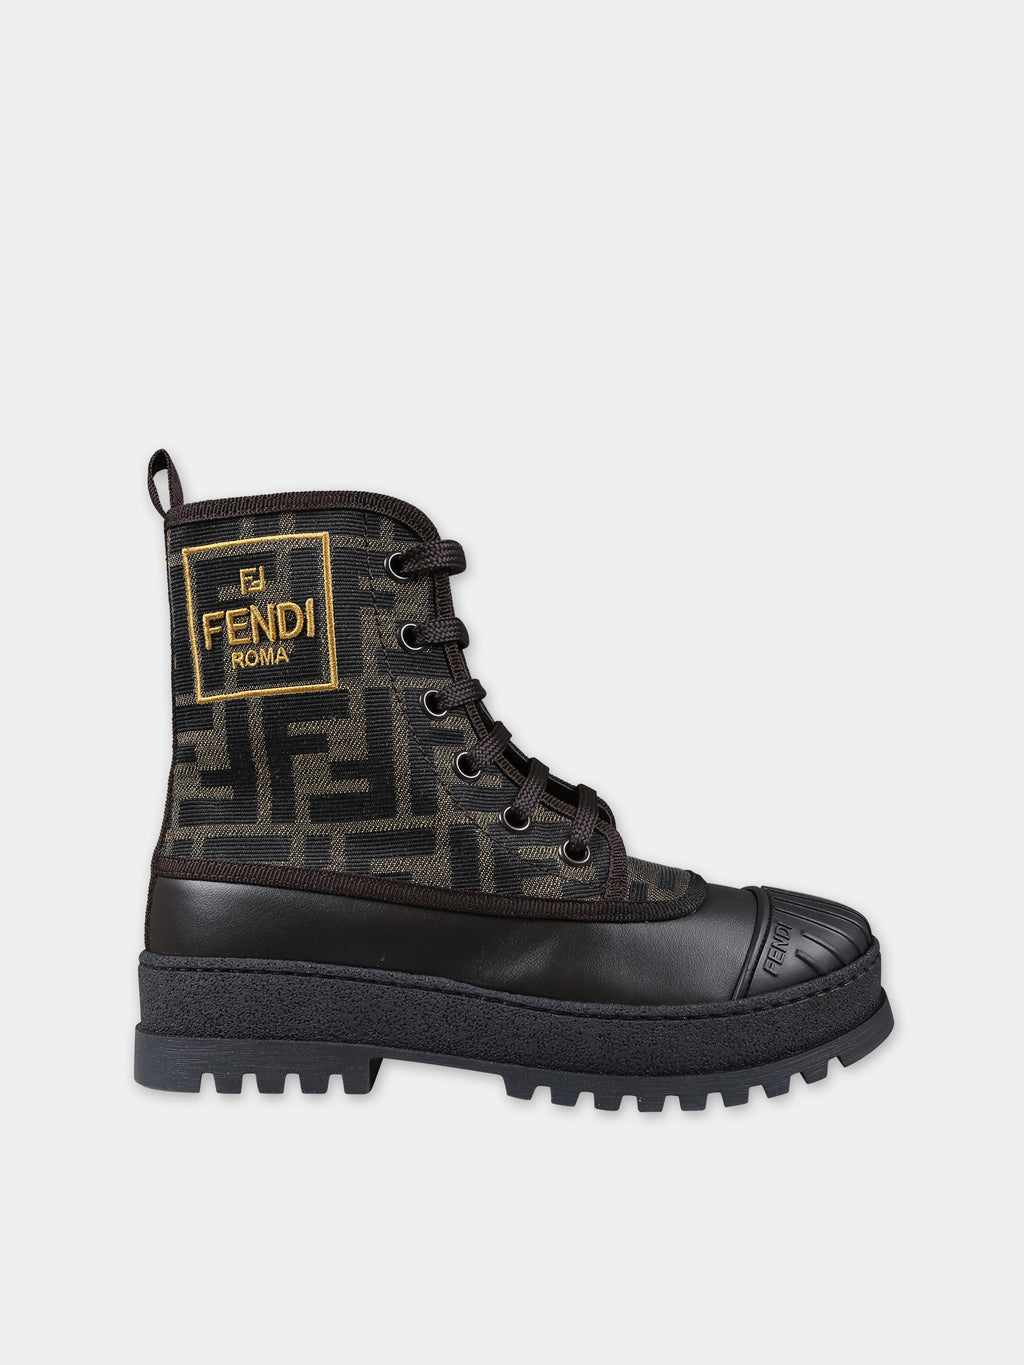 Chaussures amphibies marron pour enfants avec logo FF